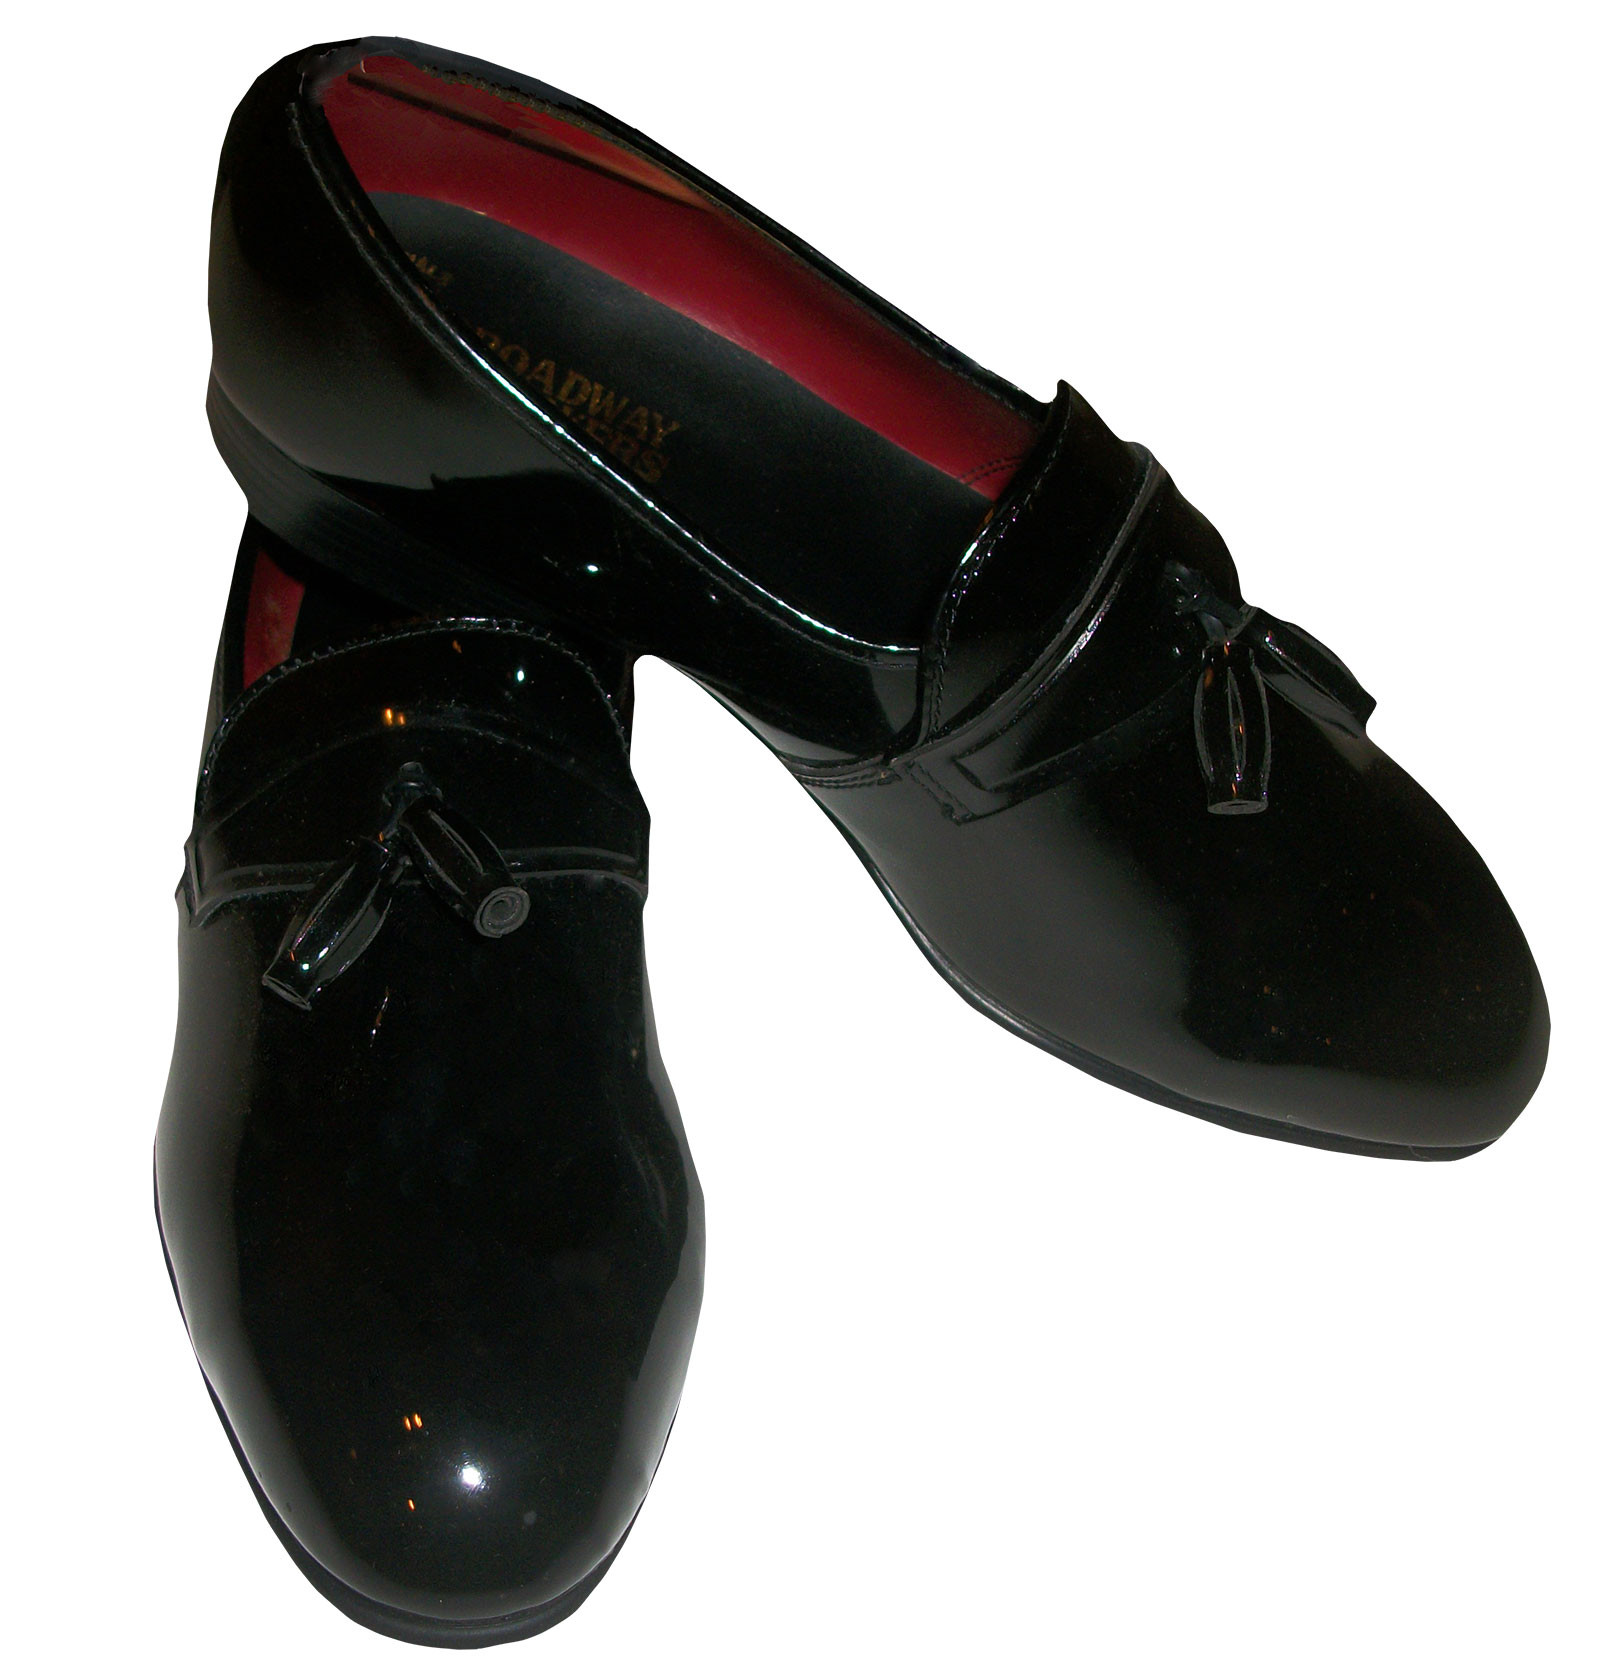 Men's Shoes, Tasseled, Slip On